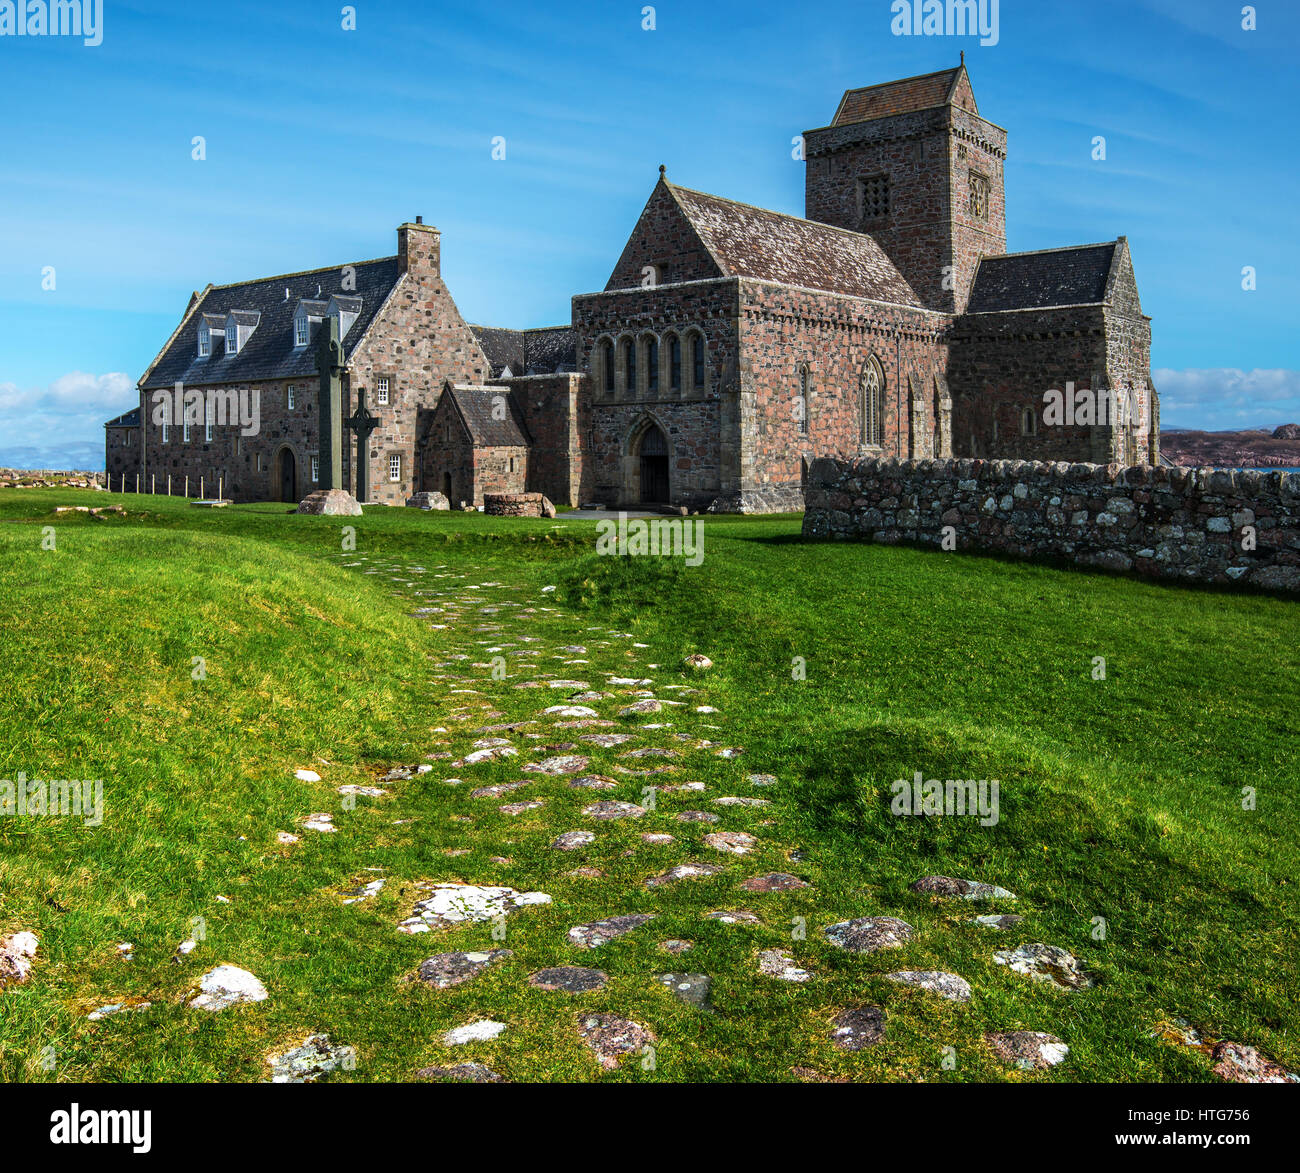 La Abadía de Iona lugar de entierro de los reyes en la isla de Iona Escocia occidental fundado por san. Columba en uno de Scotlands 563 sitios más sagrados. Foto de stock